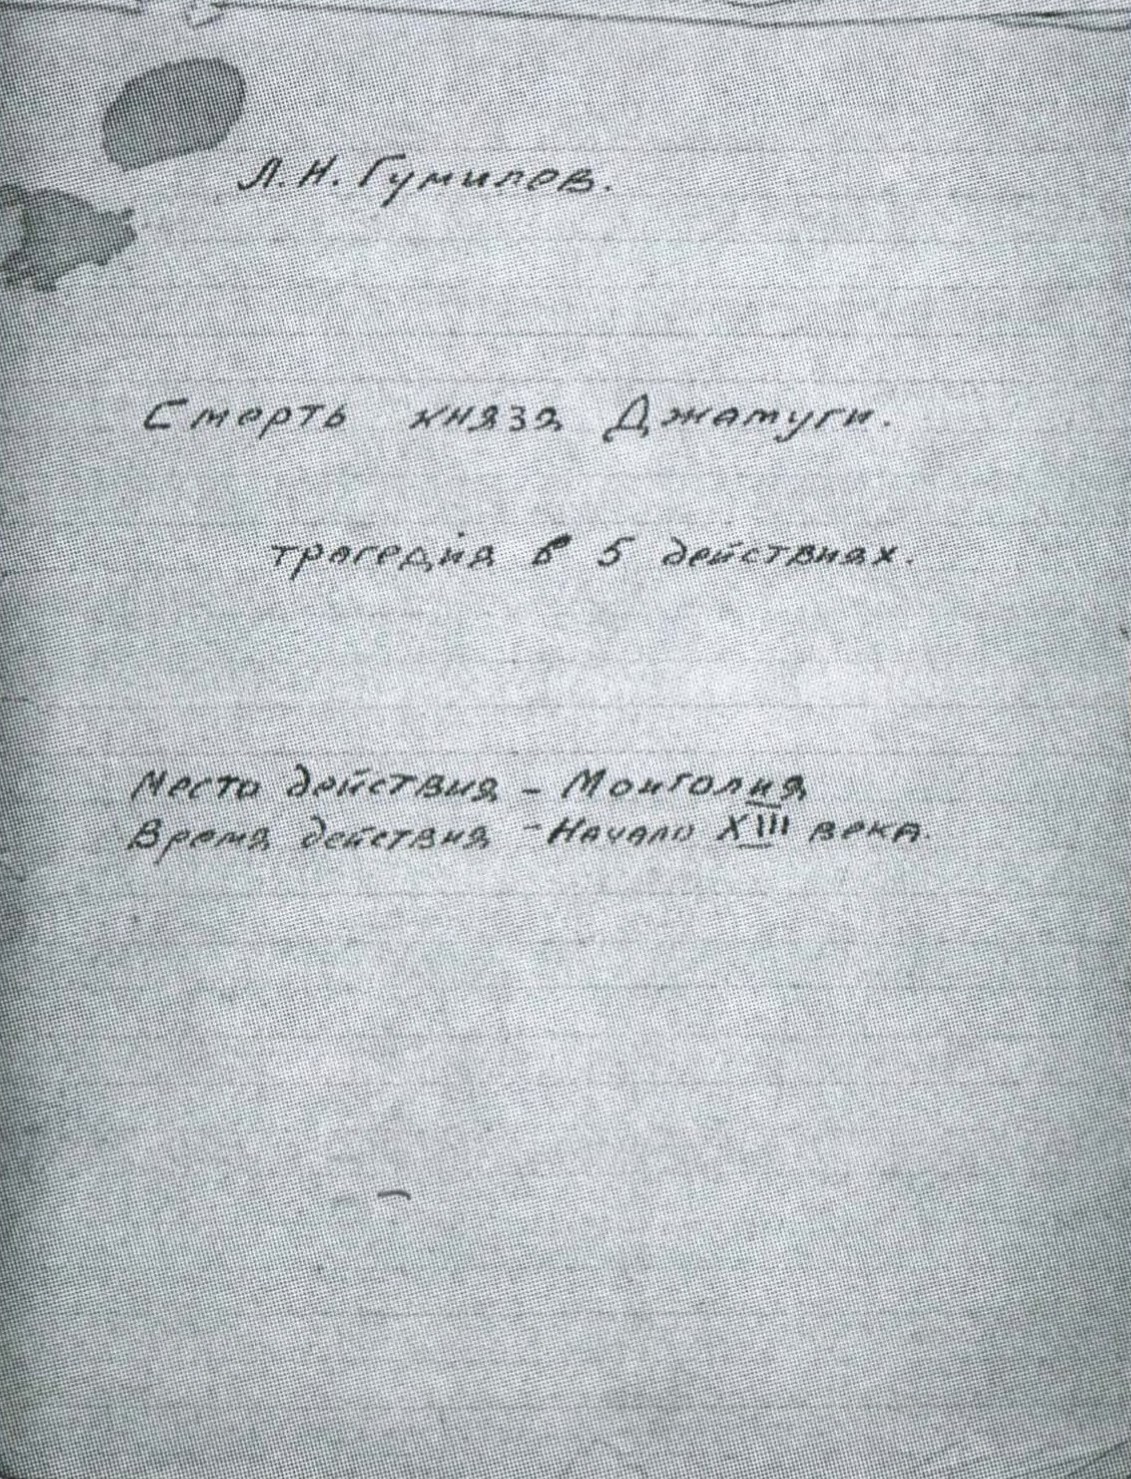 Автограф трагедии "Смерть князя Джамуги", написанной на фронте "короткими солдатскими минутами".